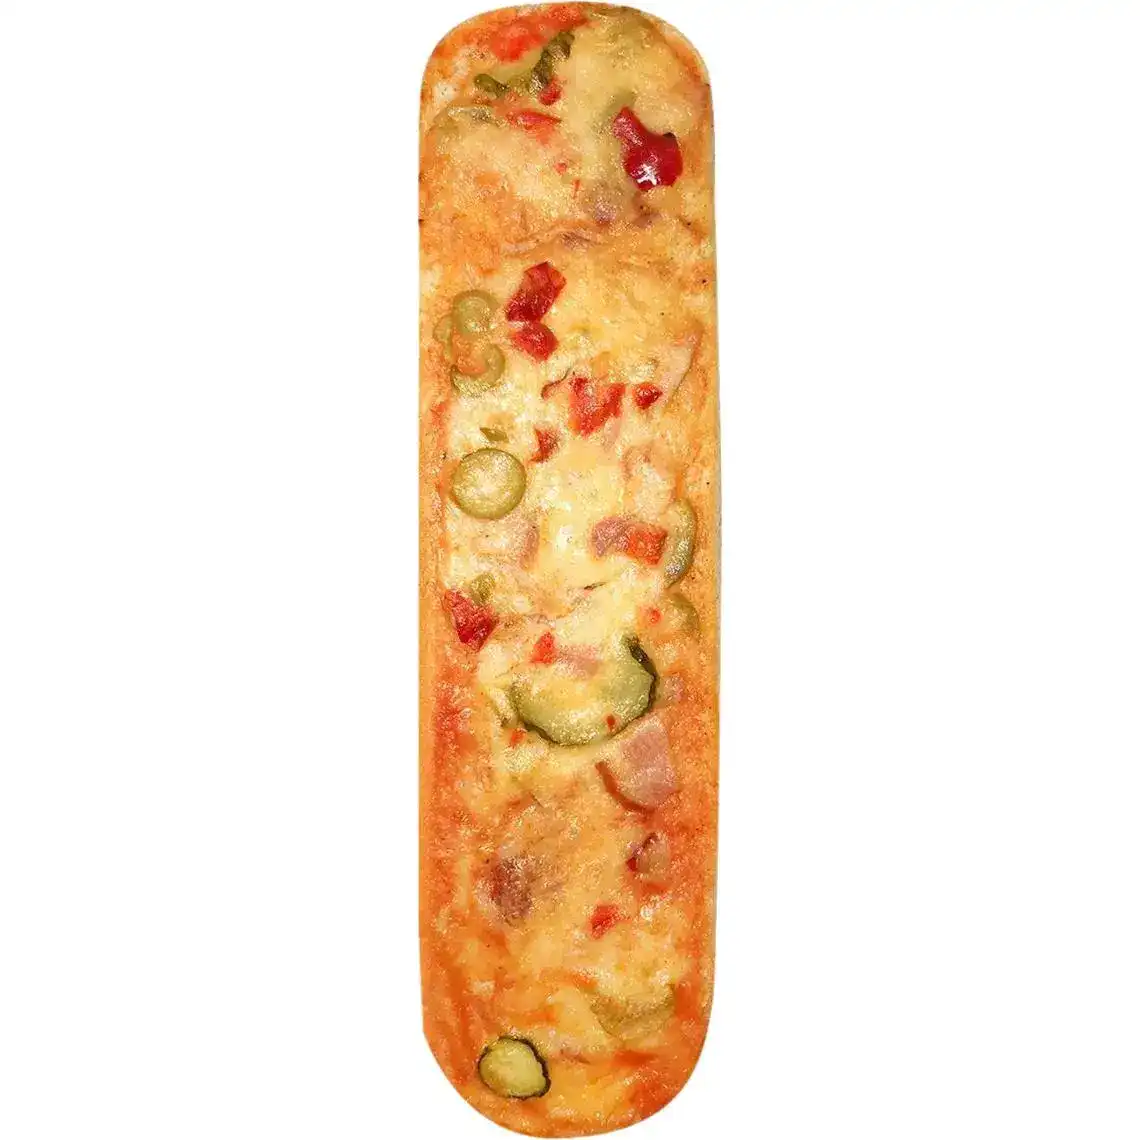 Багет-сэндвич итальянский Пикантный 135 г